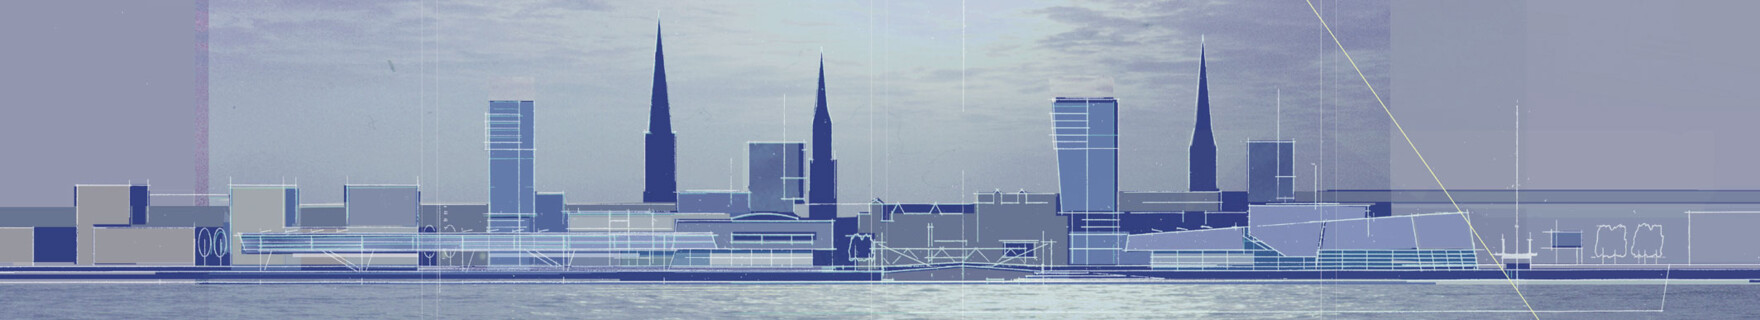 Magdeburger Hafen – Überseequartier | © Trojan Trojan + Partner Architekten